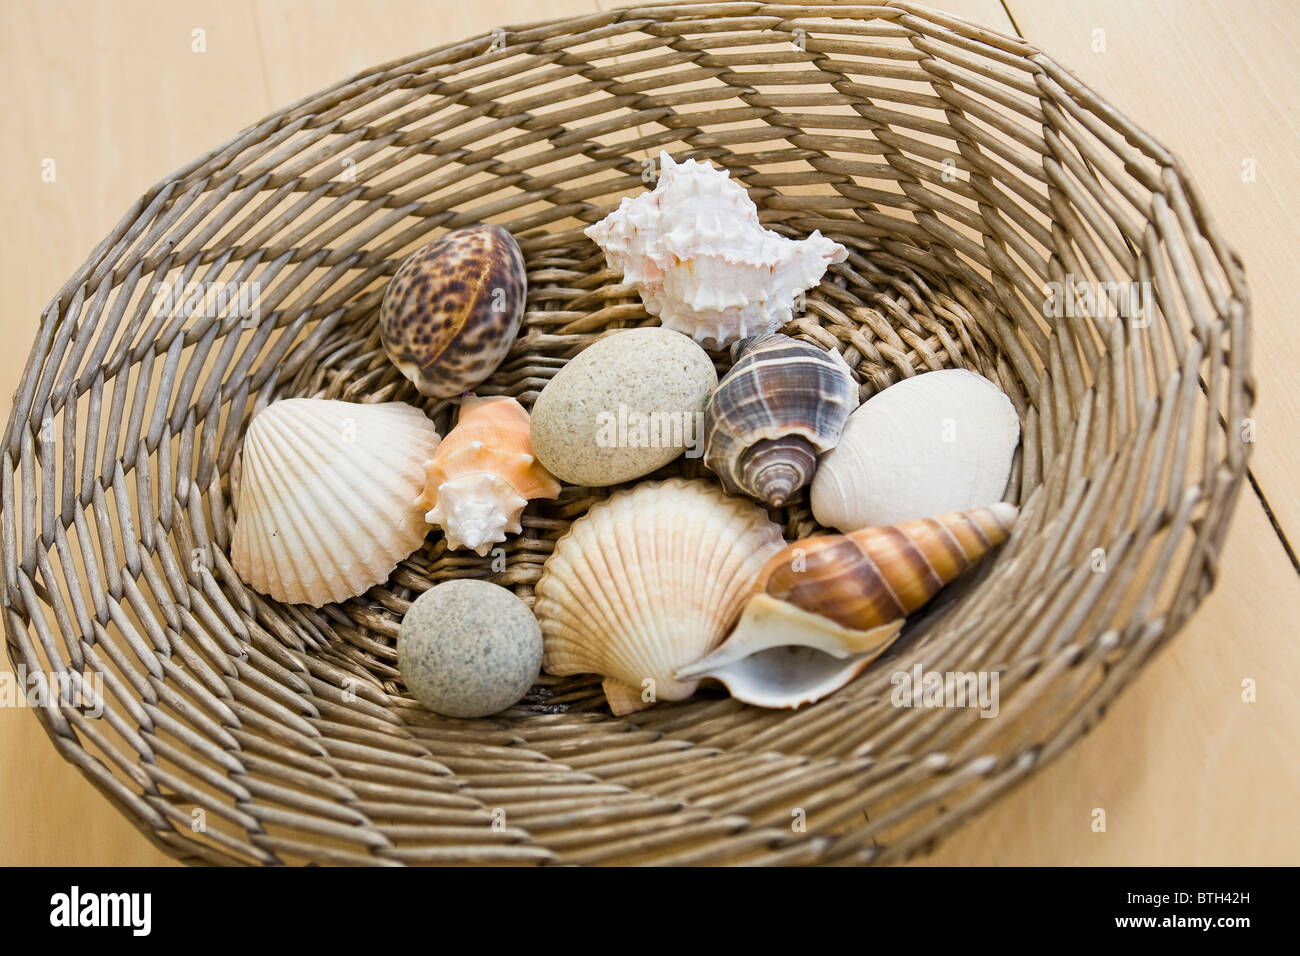 https://c8.alamy.com/comp/BTH42H/basket-of-sea-shells-BTH42H.jpg